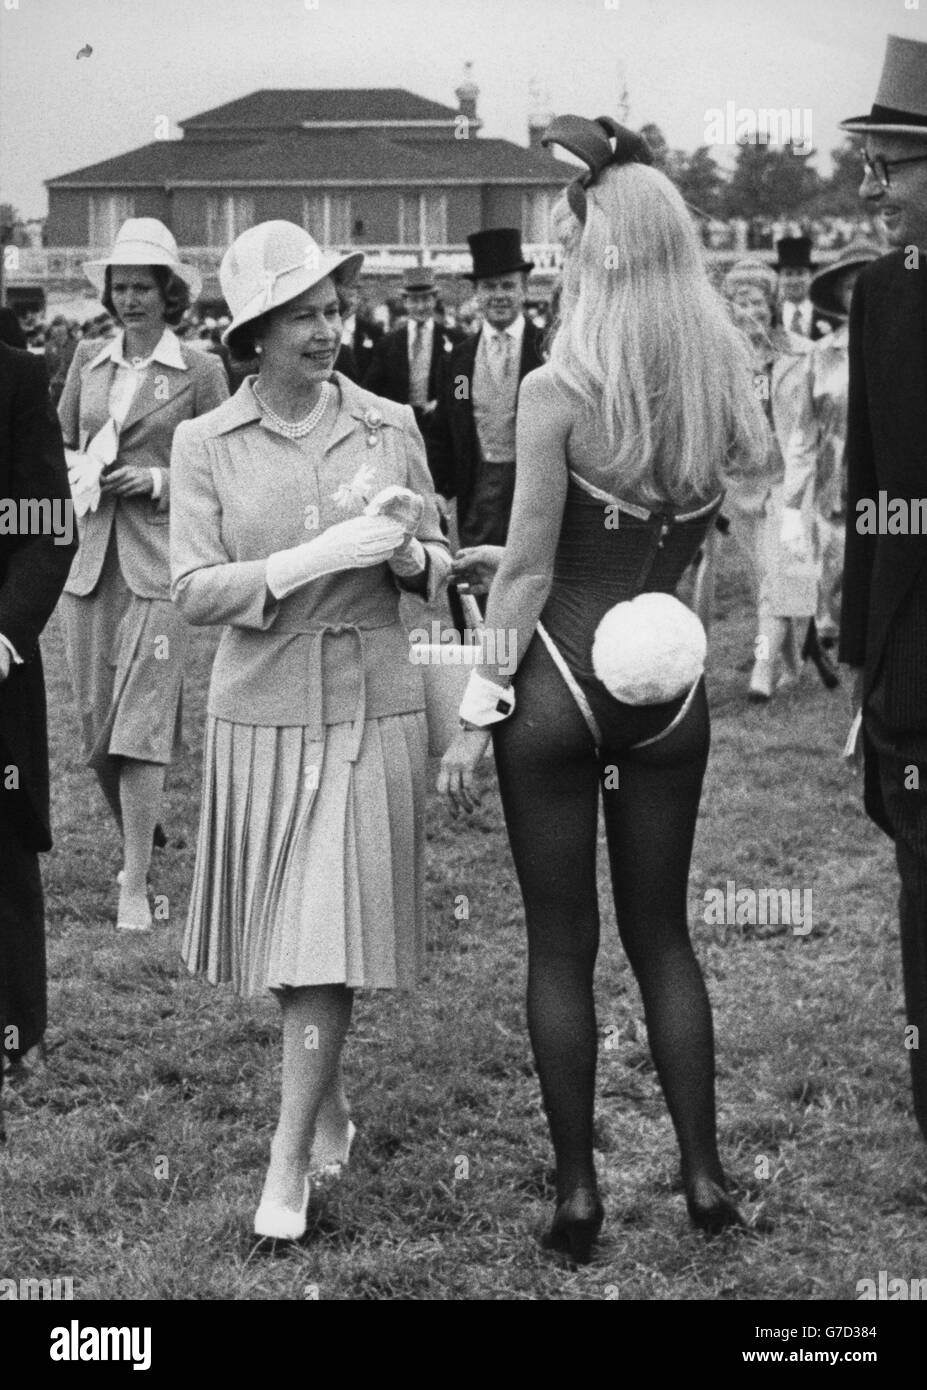 Königshaus - Königin Elizabeth II - Epsom. Queen Elizabeth II trifft während des Derby Day in Epsom auf ein Bunny Girl. Stockfoto